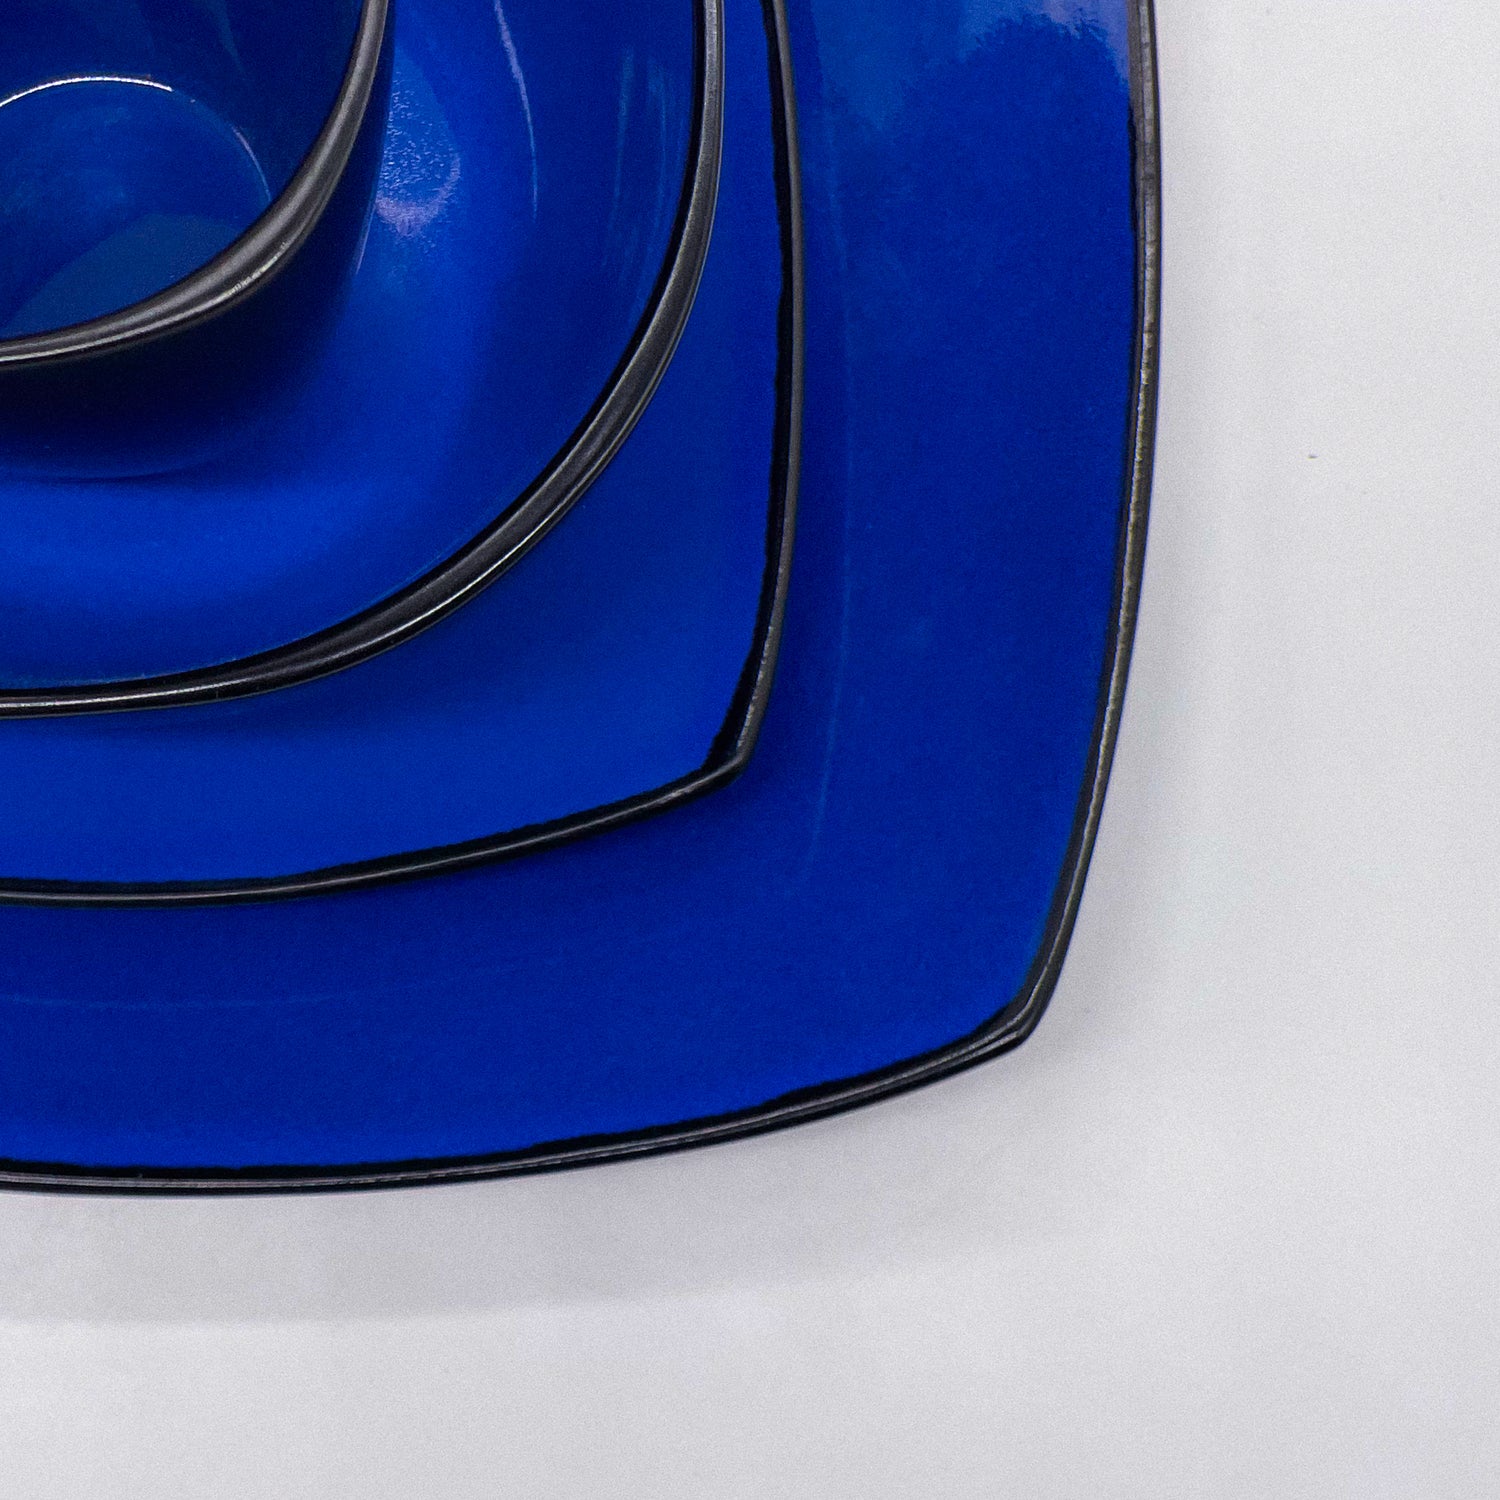 Geschirrset mit großem und kleinen Teller, Schüssel und Tasse in Blau von MIAMIO Marsili Kollektion